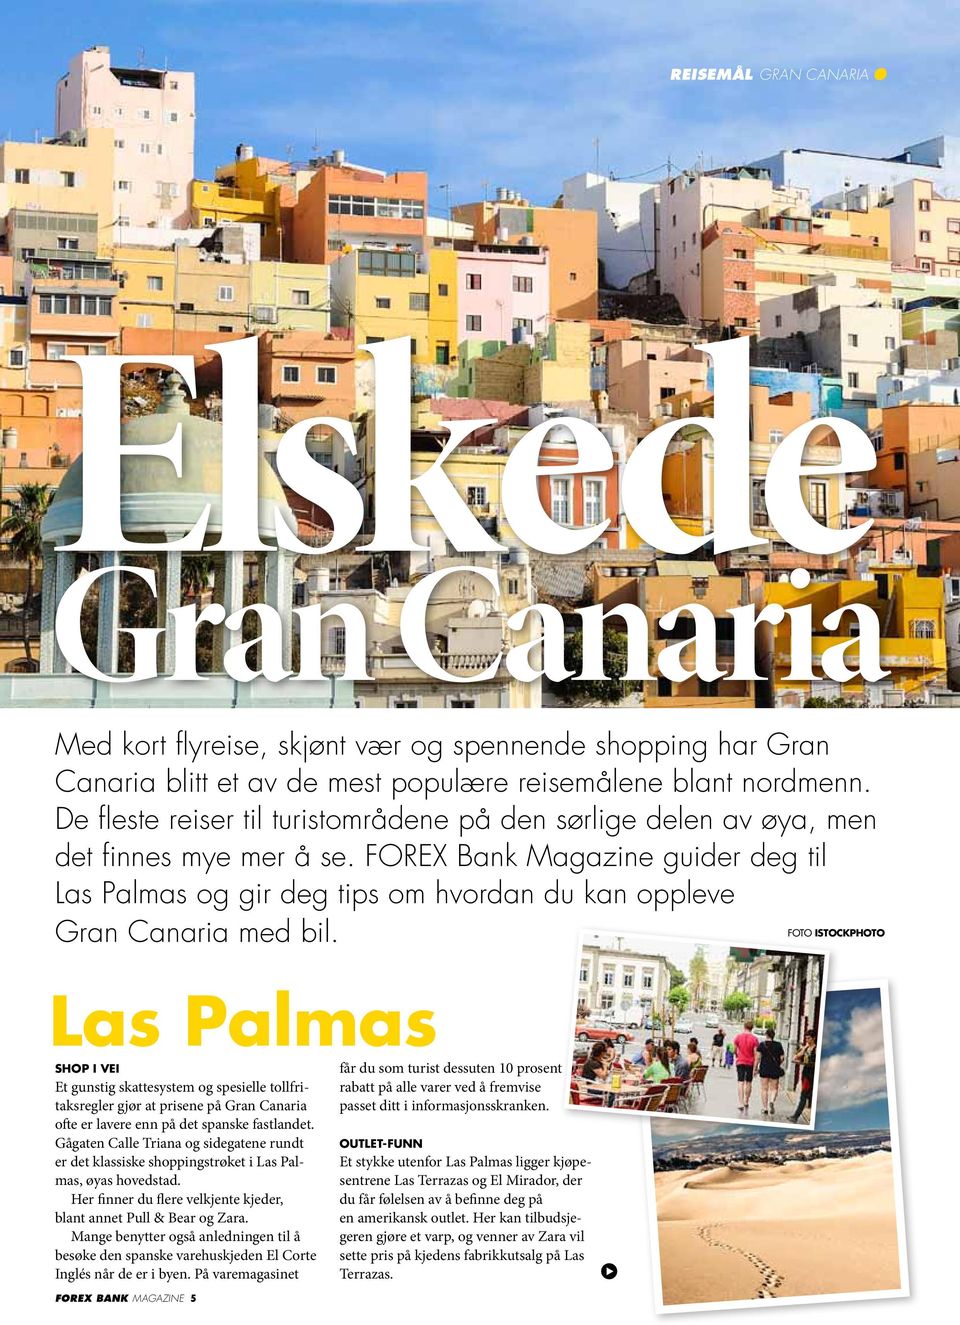 FOREX Bank Magazine guider deg til Las Palmas og gir deg tips om hvordan du kan oppleve Gran Canaria med bil.